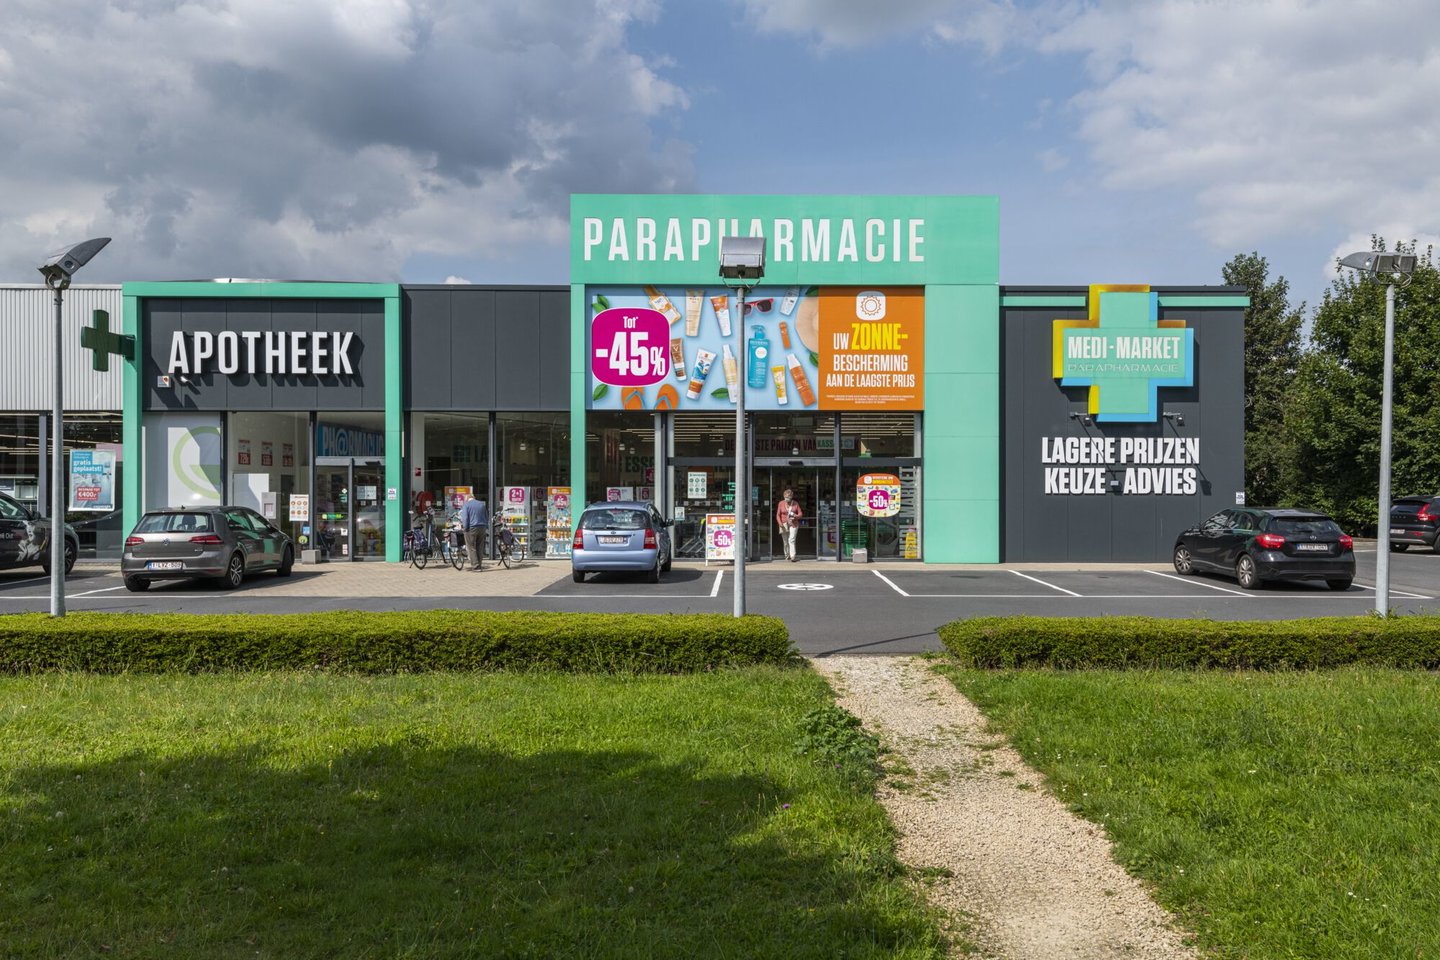 Etalage van apotheek Medi-Market in Gent